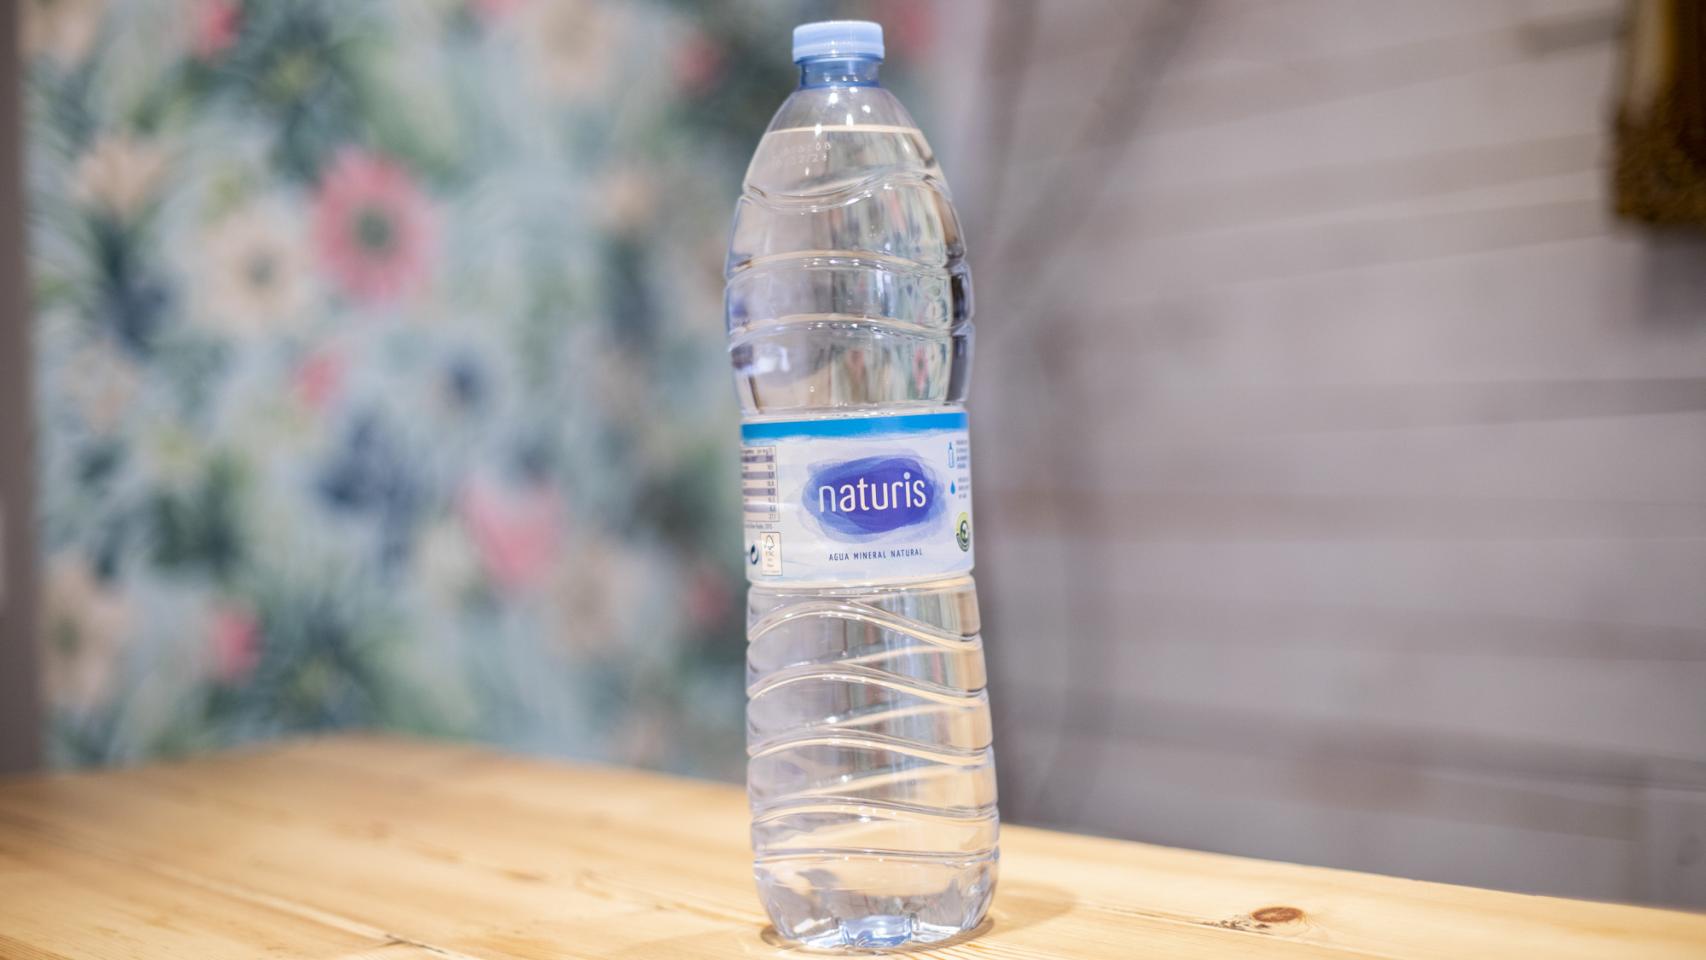 Agua mineral natural botella 1,5 l · SANT ANIOL · Supermercado El Corte  Inglés El Corte Inglés